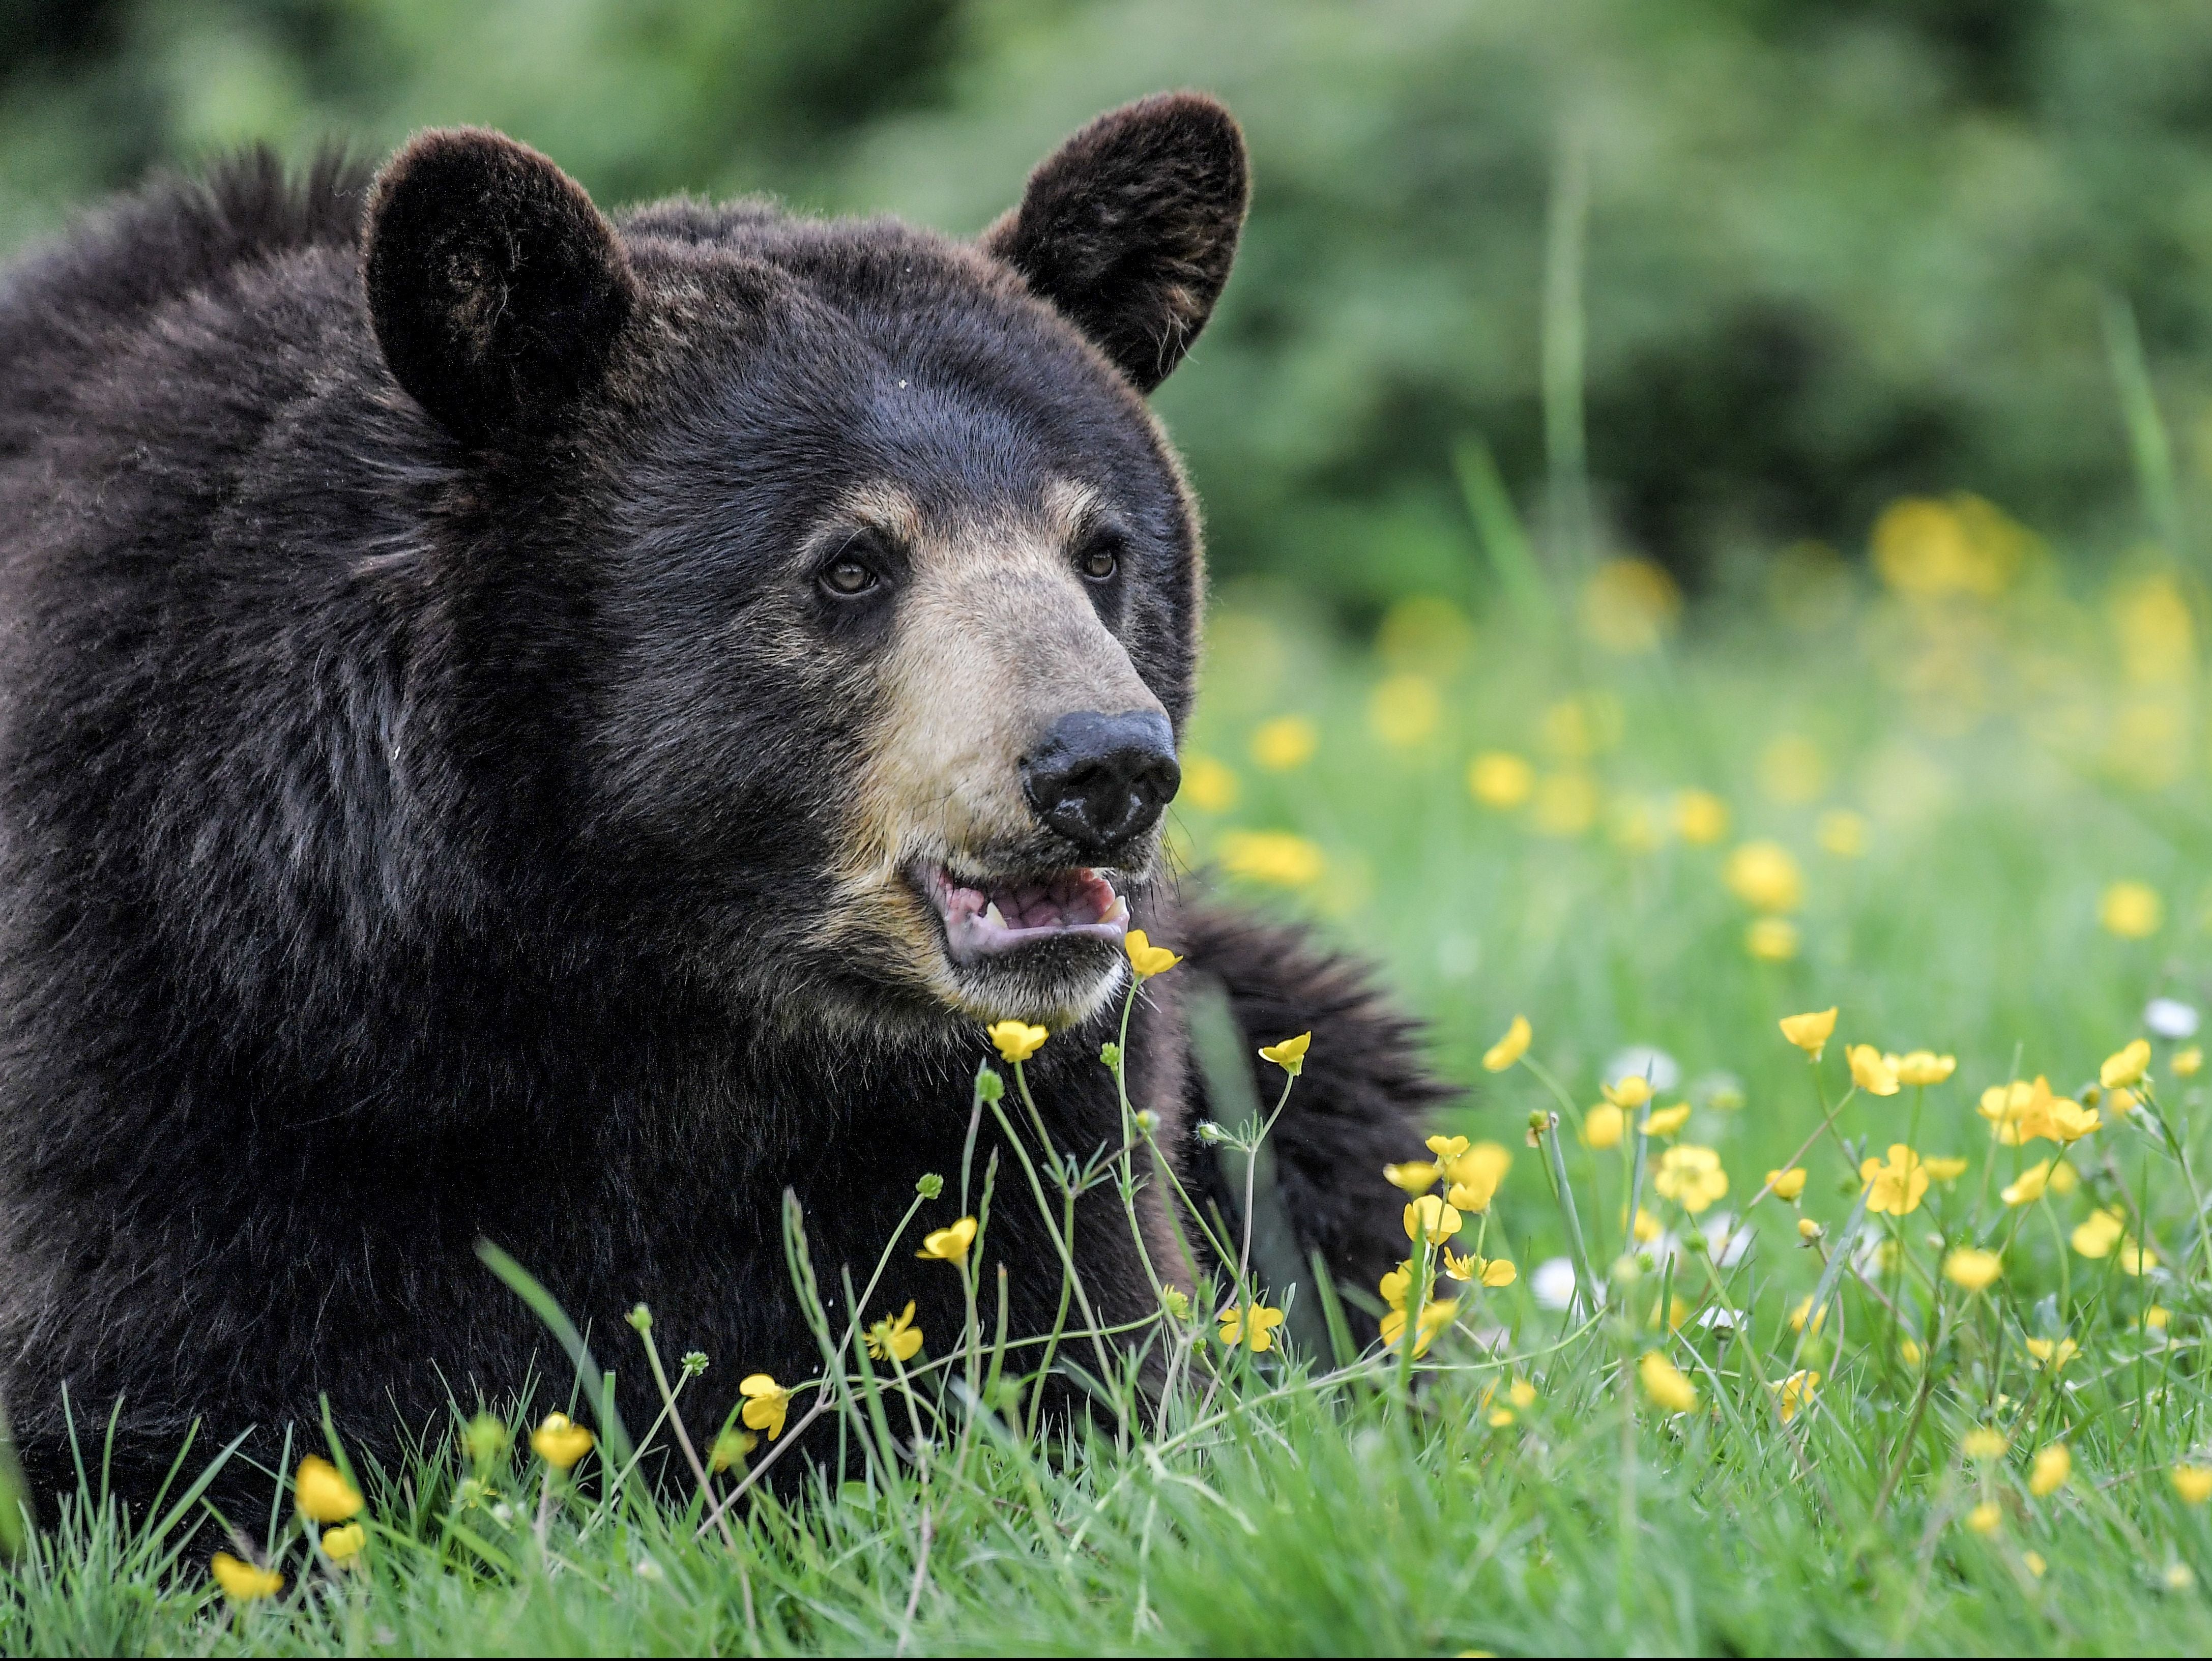 Es ilegal alimentar a los osos Gatlinburg según las regulaciones
publicadas en el año 2000.